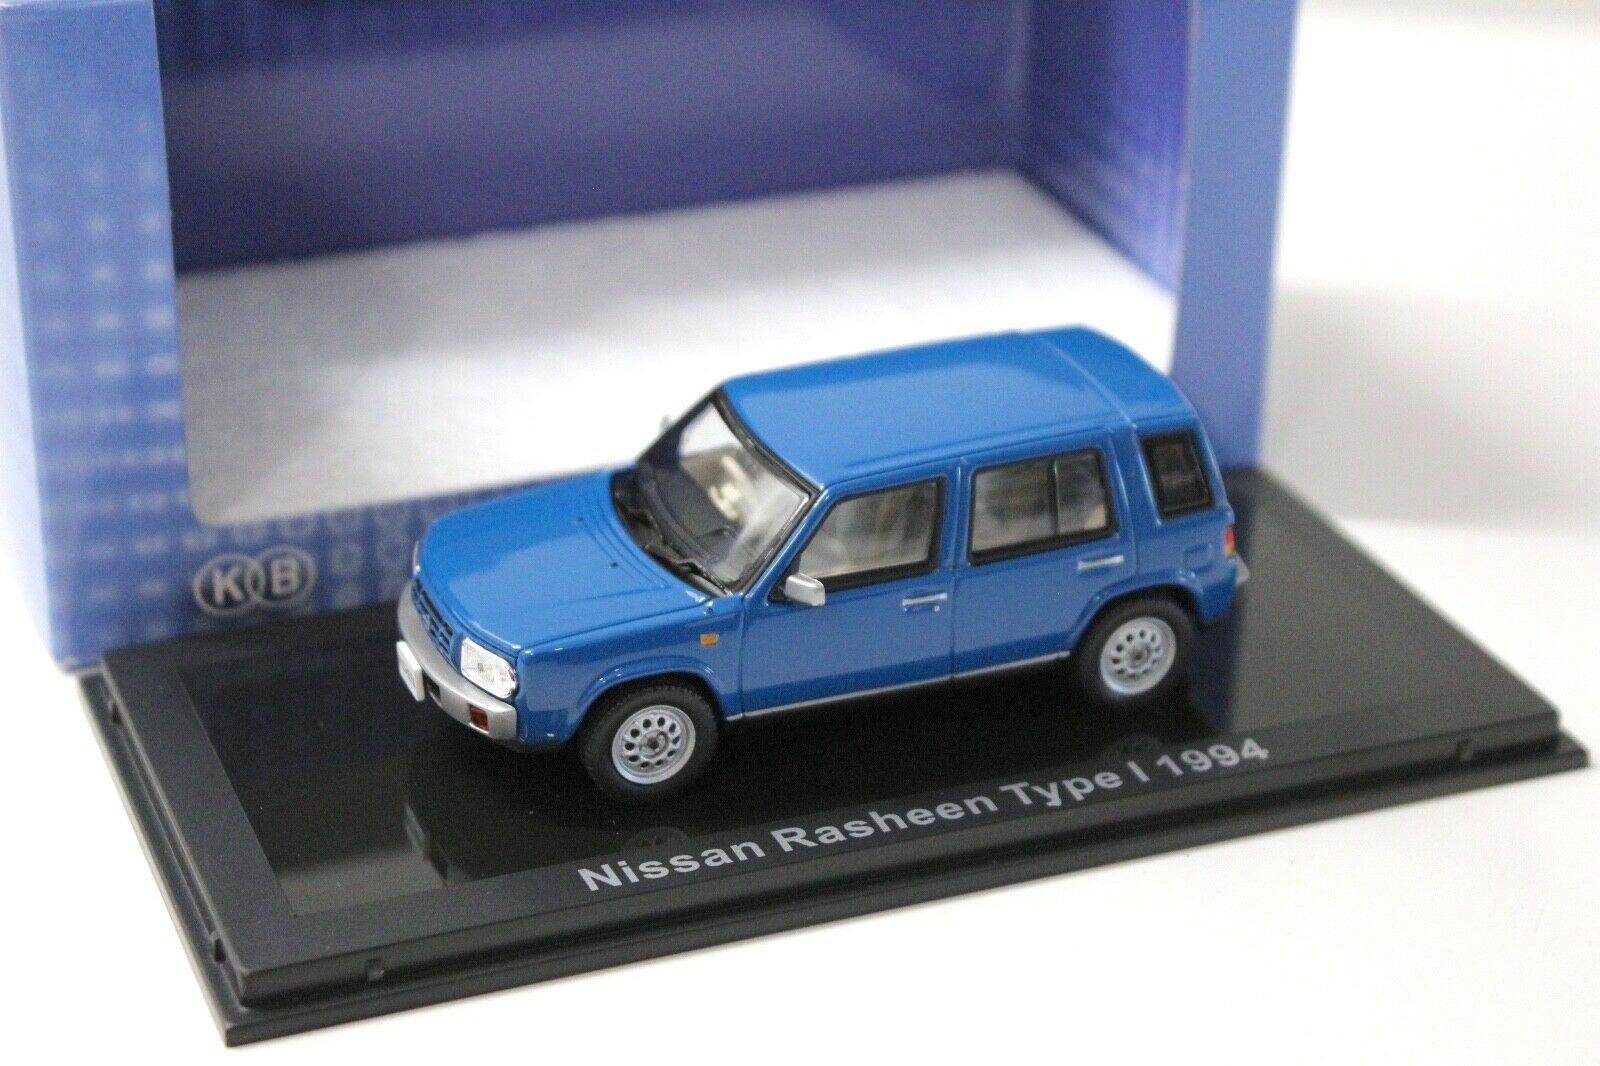 1:43 Norev Nissan Rasheen Type I 1994 blue 